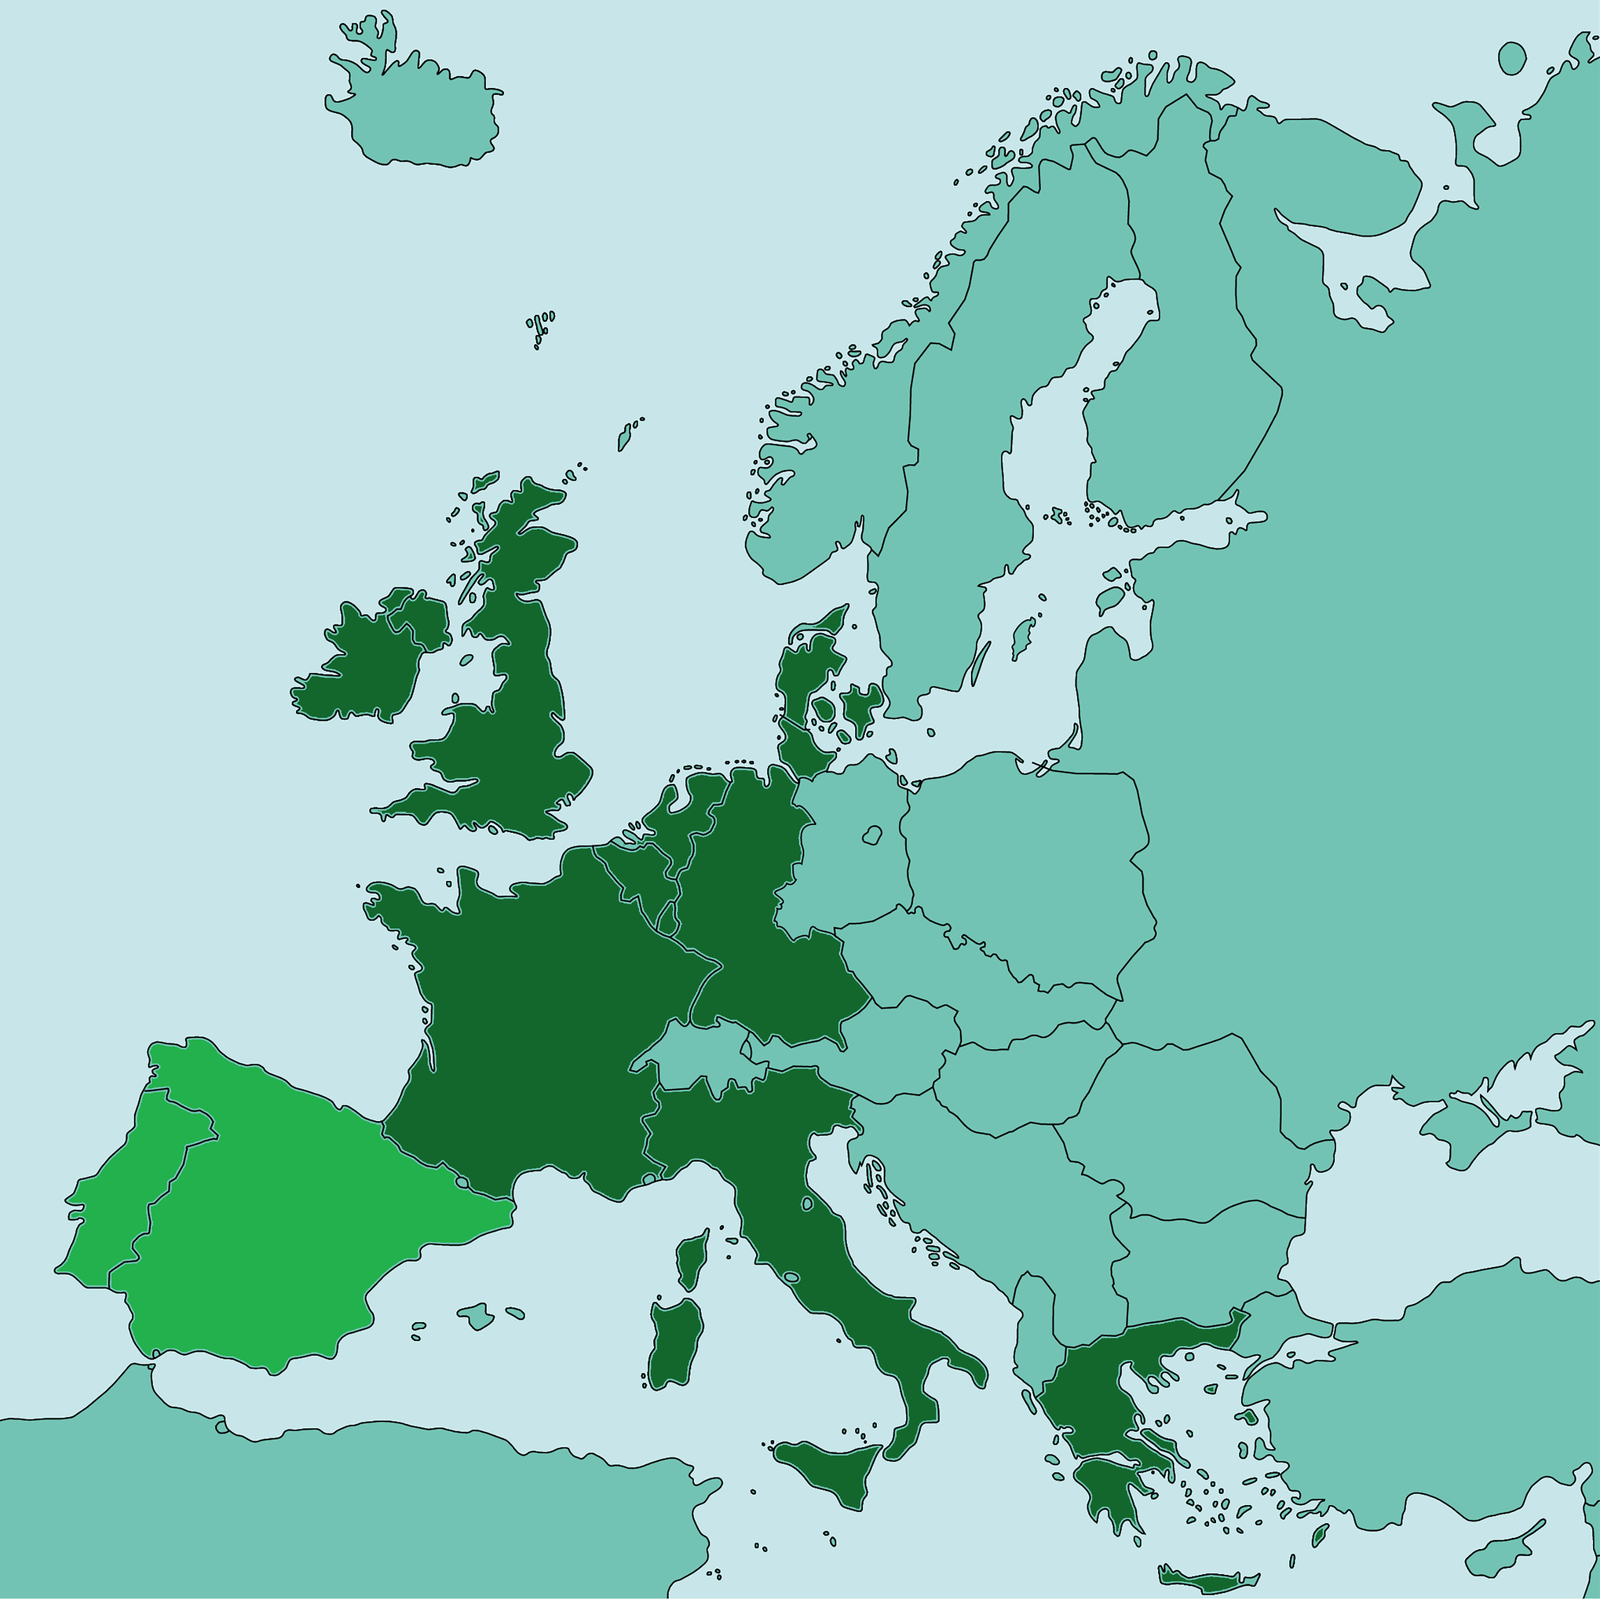 Mapa przedstawia Europę. Zaznaczone są na niej kontury państw: Belgii, Francji, Luksemburga, Niderlandów, RFN, Włoch, Danii, Irlandii, Wielkiej Brytanii oraz innym kolorem Hiszpanii i Portugalii. 